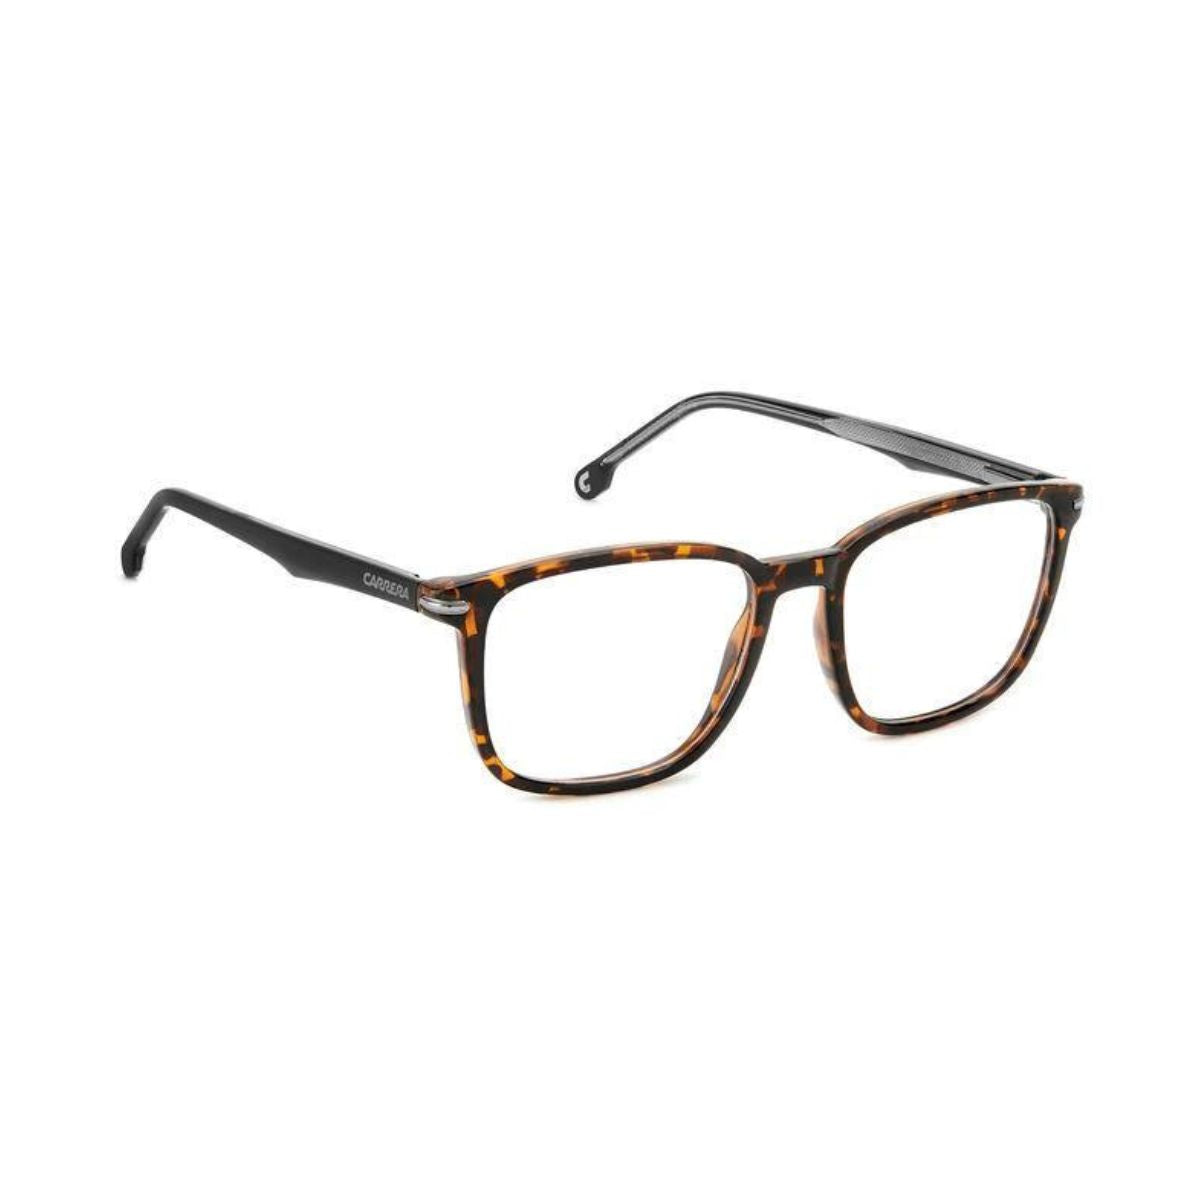 "Carrera 292 086 eyesight glasses frame for men's at optorium"